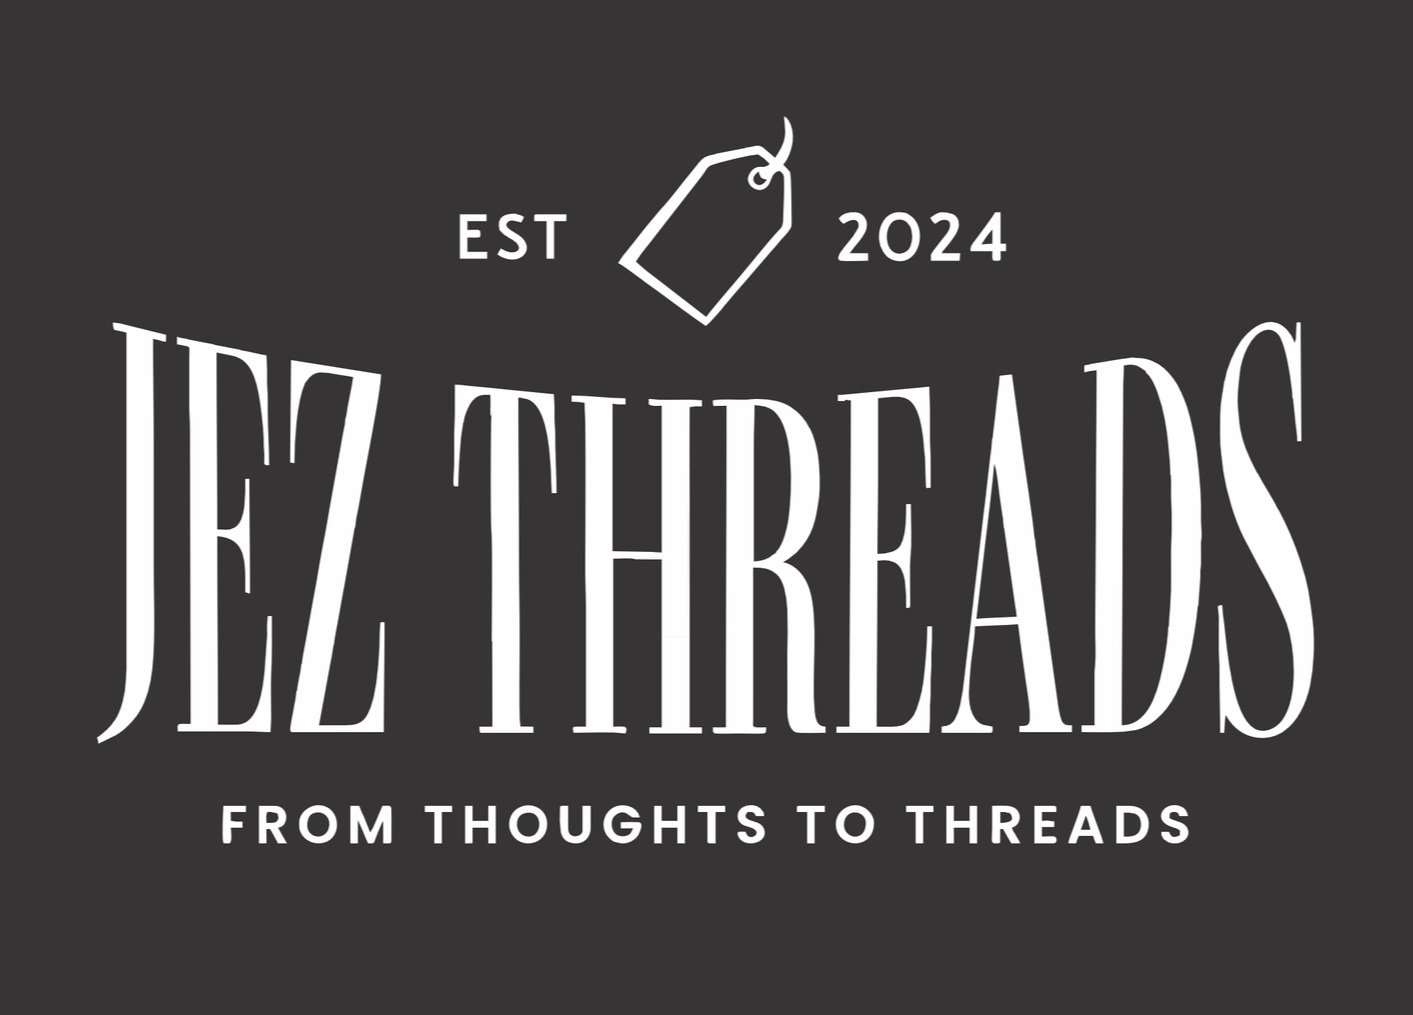 Jez Threads